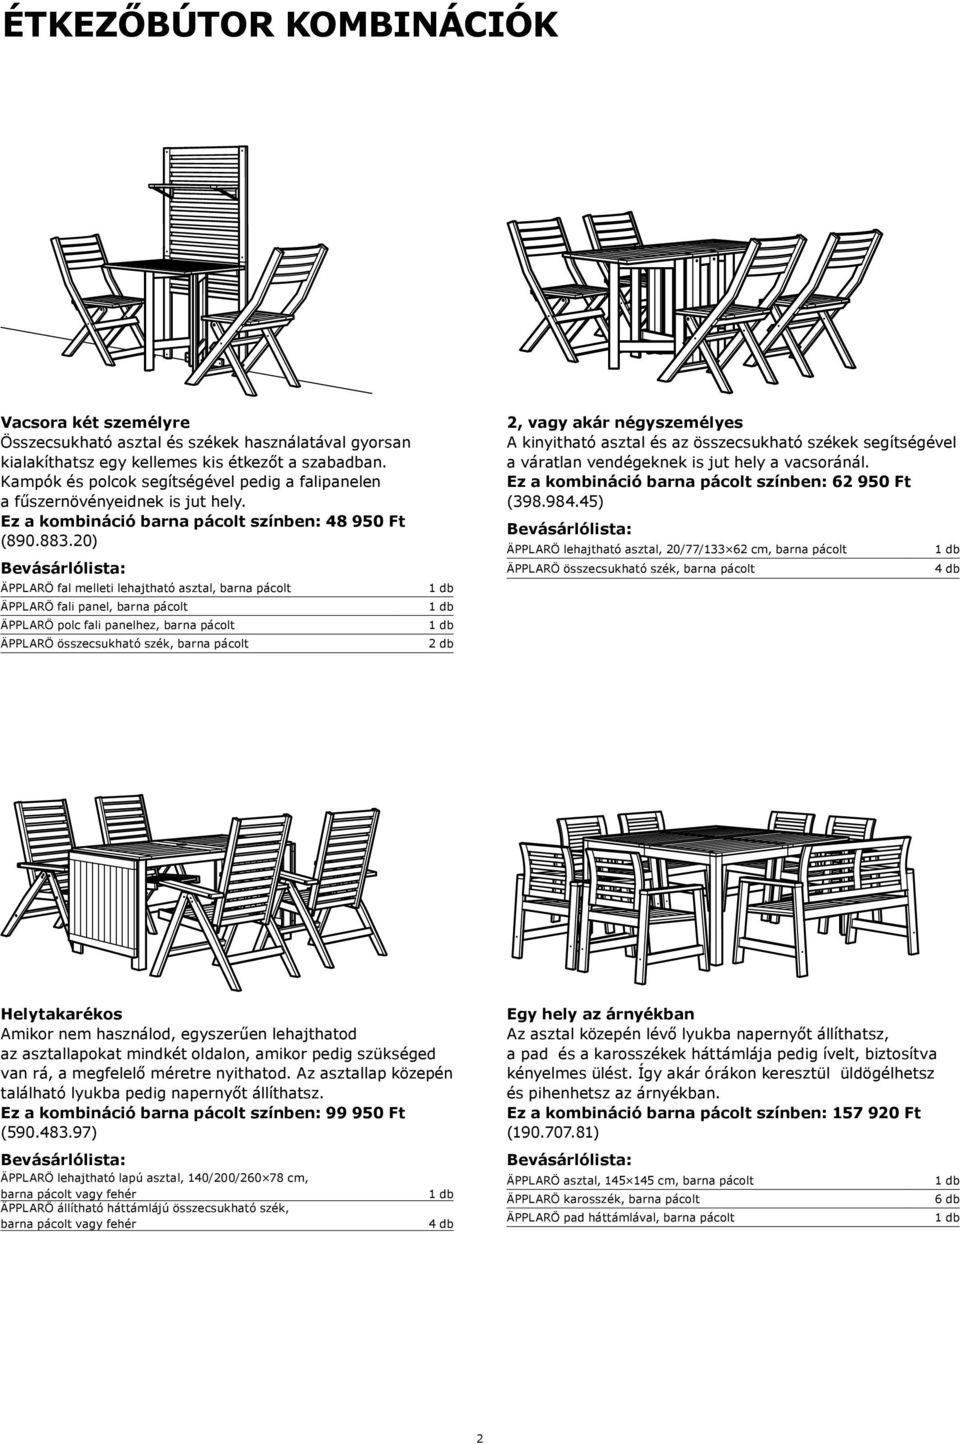 20) ÄPPLARÖ fal melleti lehajtható asztal, barna pácolt ÄPPLARÖ fali panel, barna pácolt ÄPPLARÖ polc fali panelhez, barna pácolt ÄPPLARÖ összecsukható szék, barna pácolt 2, vagy akár négyszemélyes A